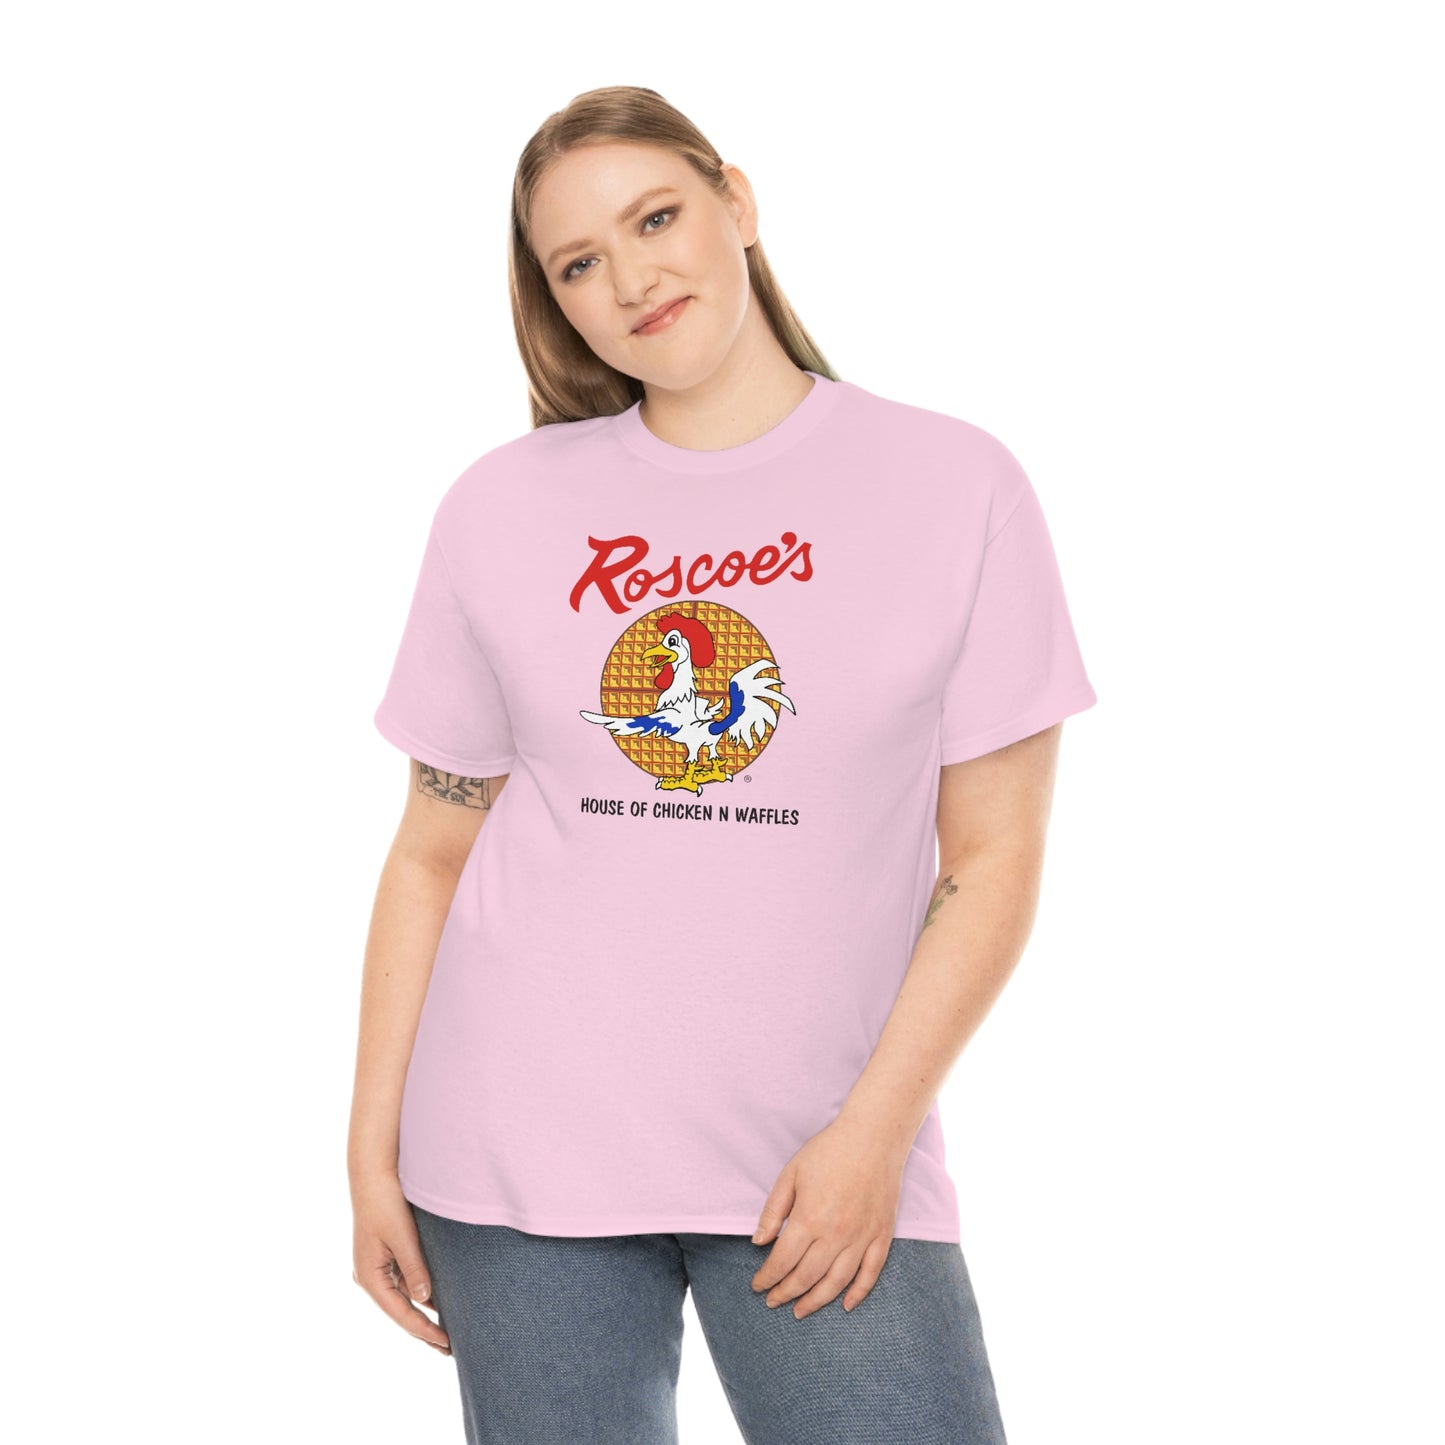 Rosco's T-shirt